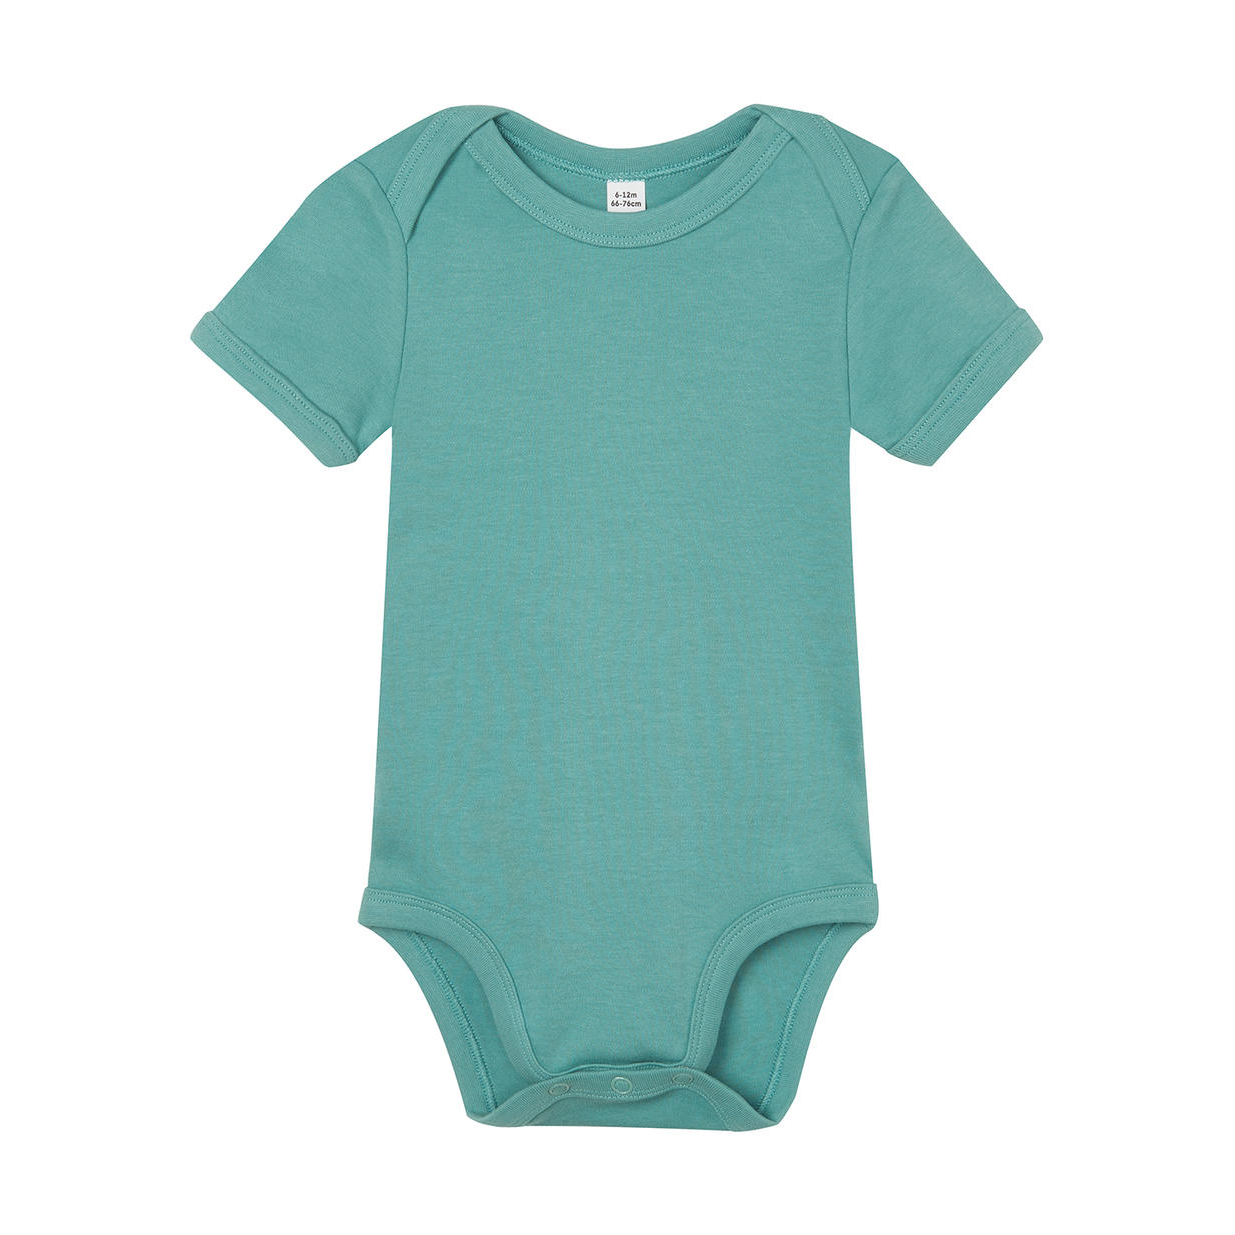 Dětské body Babybugz Organic Baby Short - zelené-modré, 12-18 měsíců